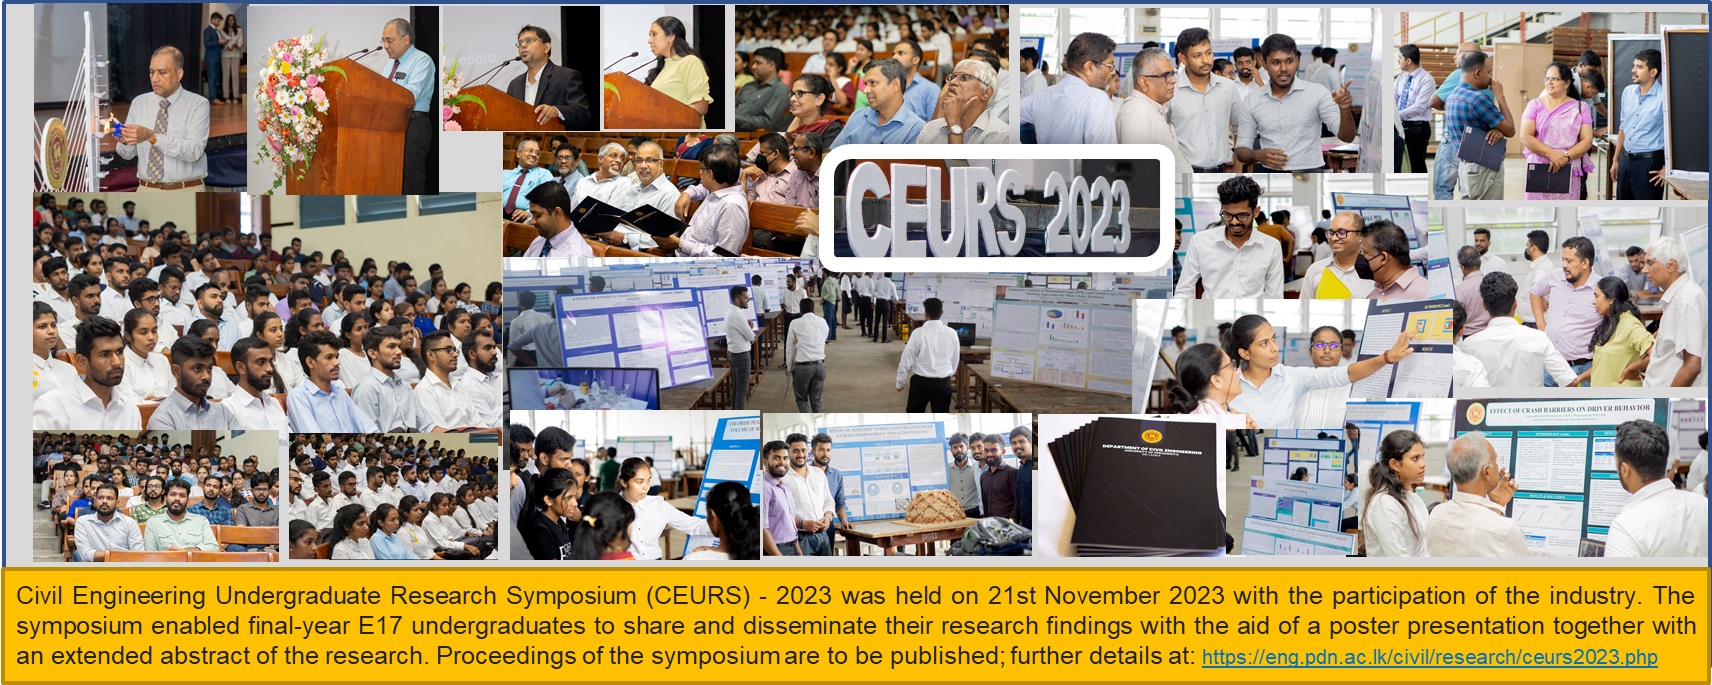 Civil Engineering Undergraduate Research Symposium (CEURS) - 2023